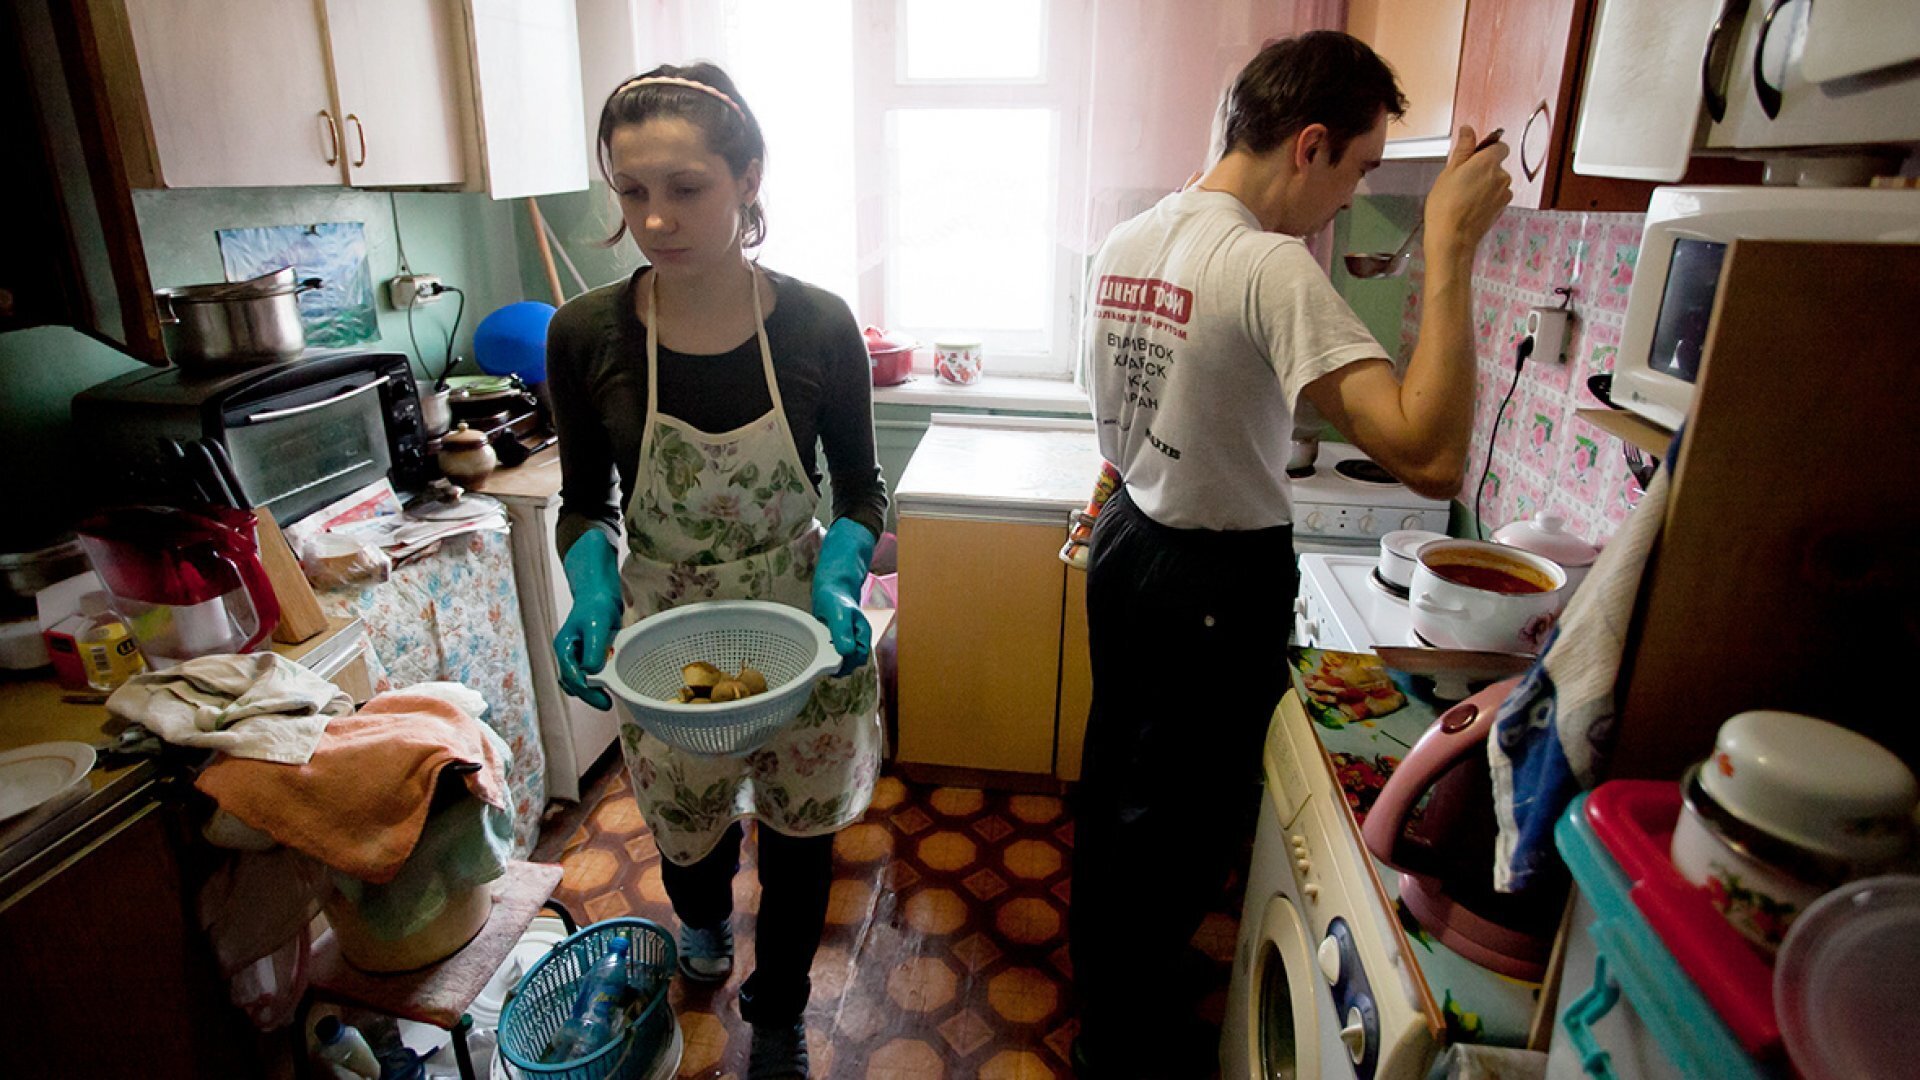 Дом бедной семьи. Бедная семья. Современный быт. Обычная жизнь в российских квартирах. Квартира бедной семьи.